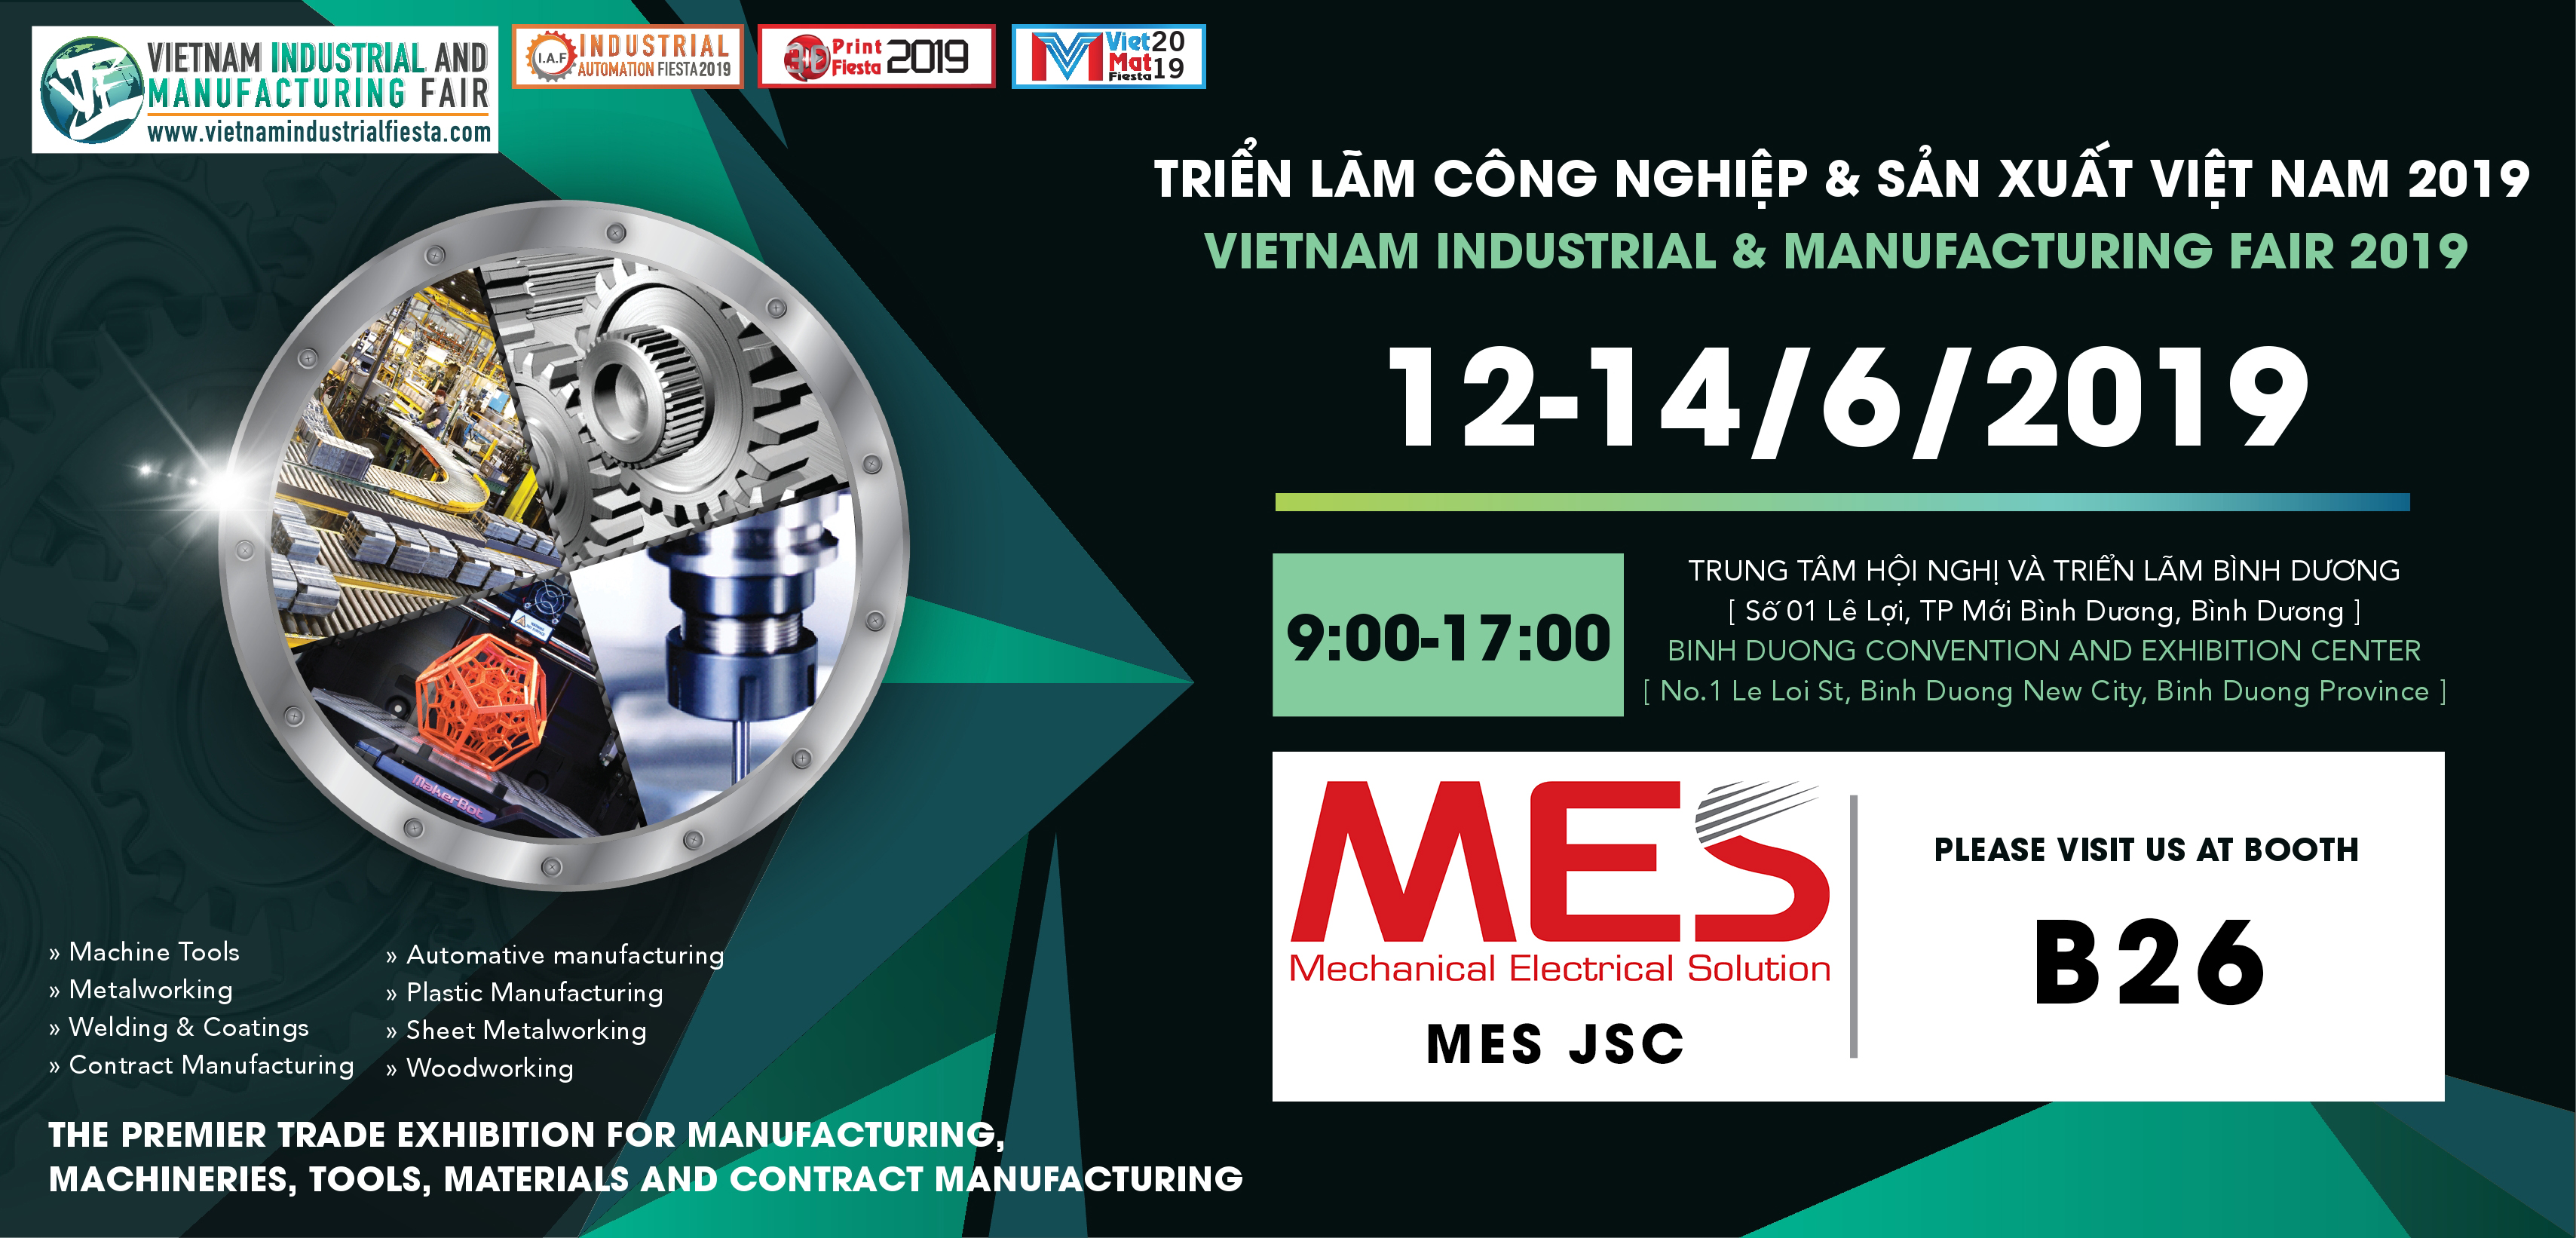 Triển lãm công nghiệp và sản xuât Việt Nam 2019